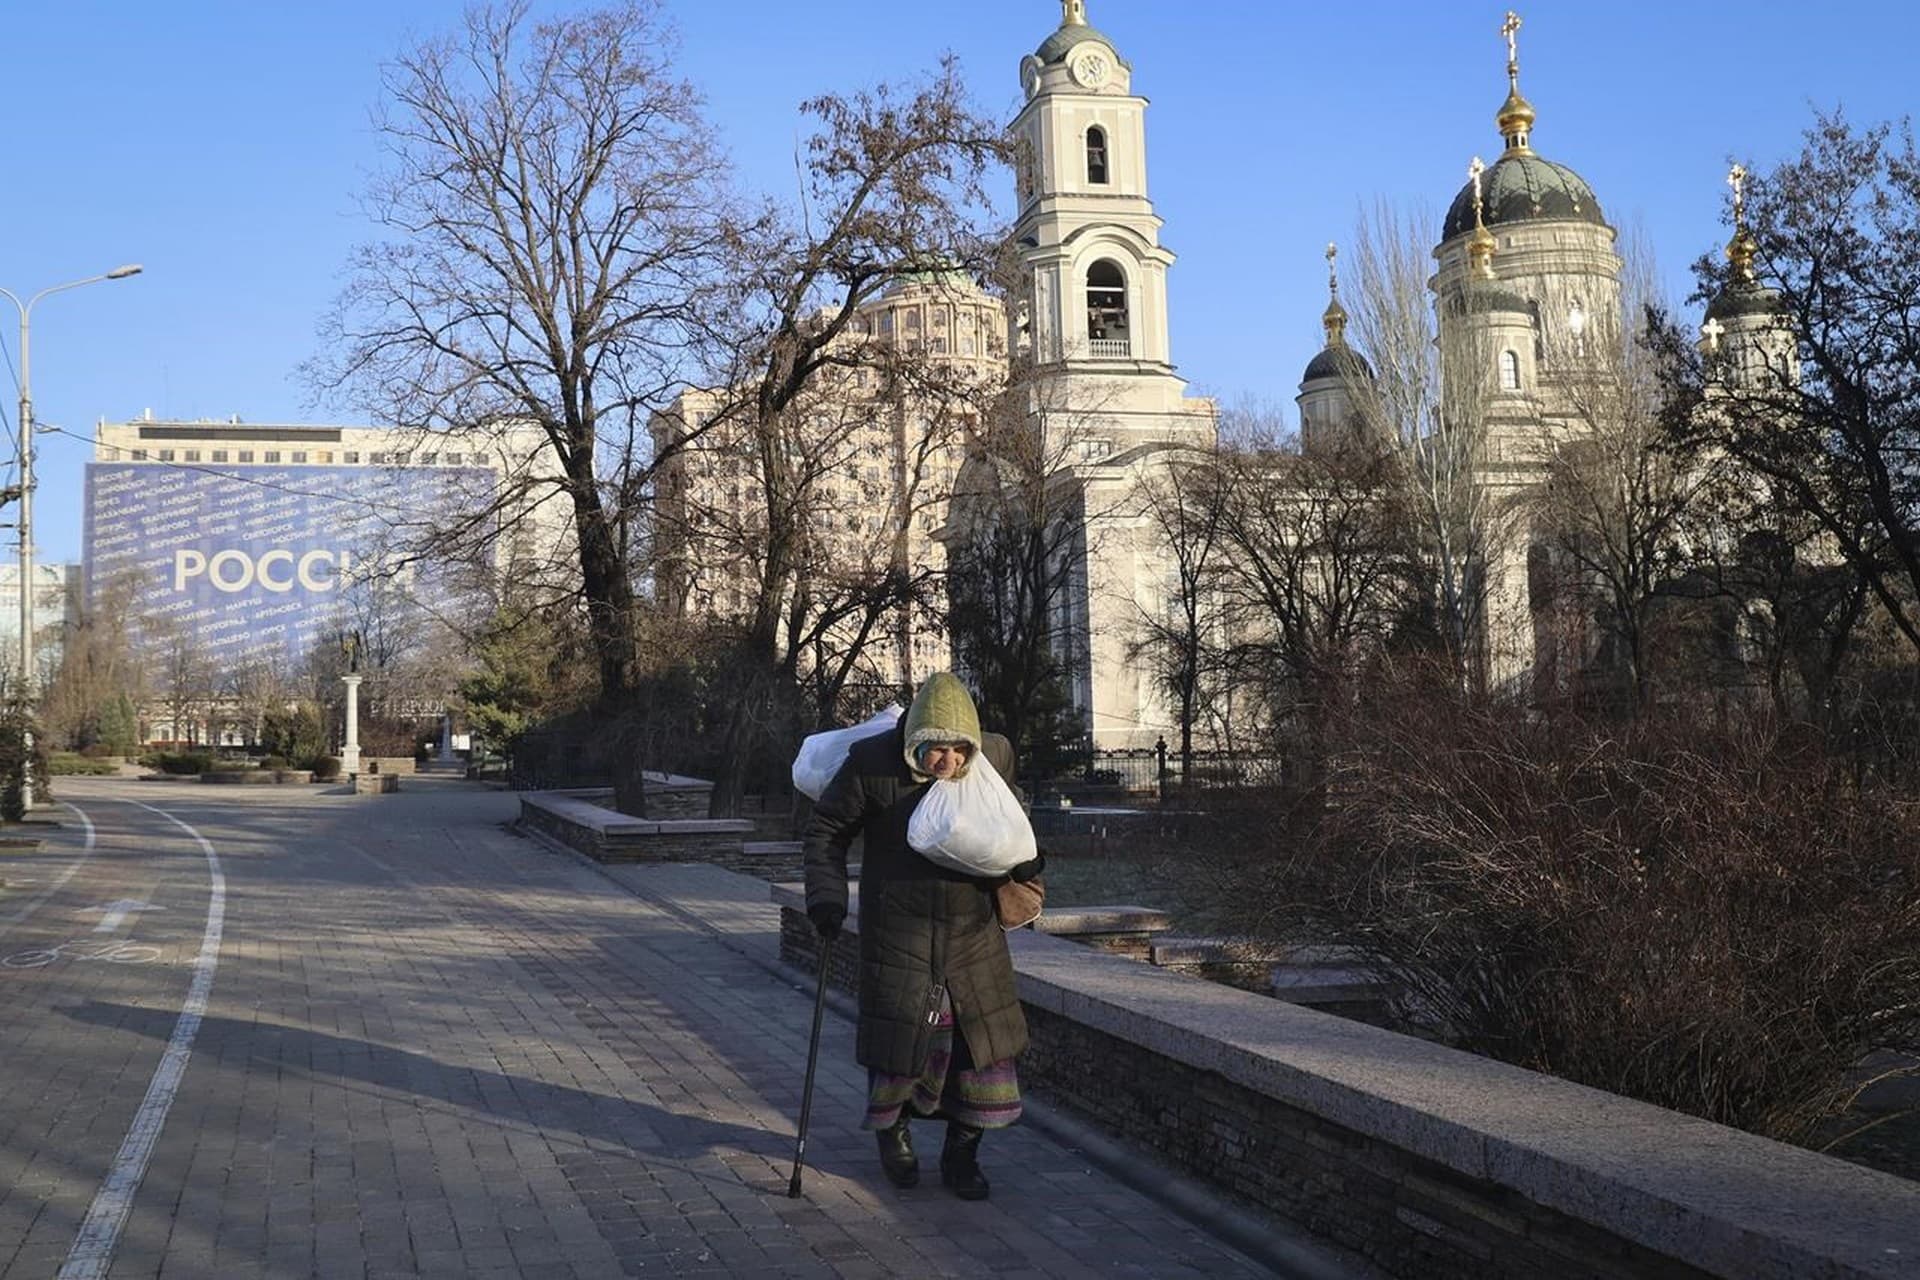 An elderly woman walks down a street central Donetsk